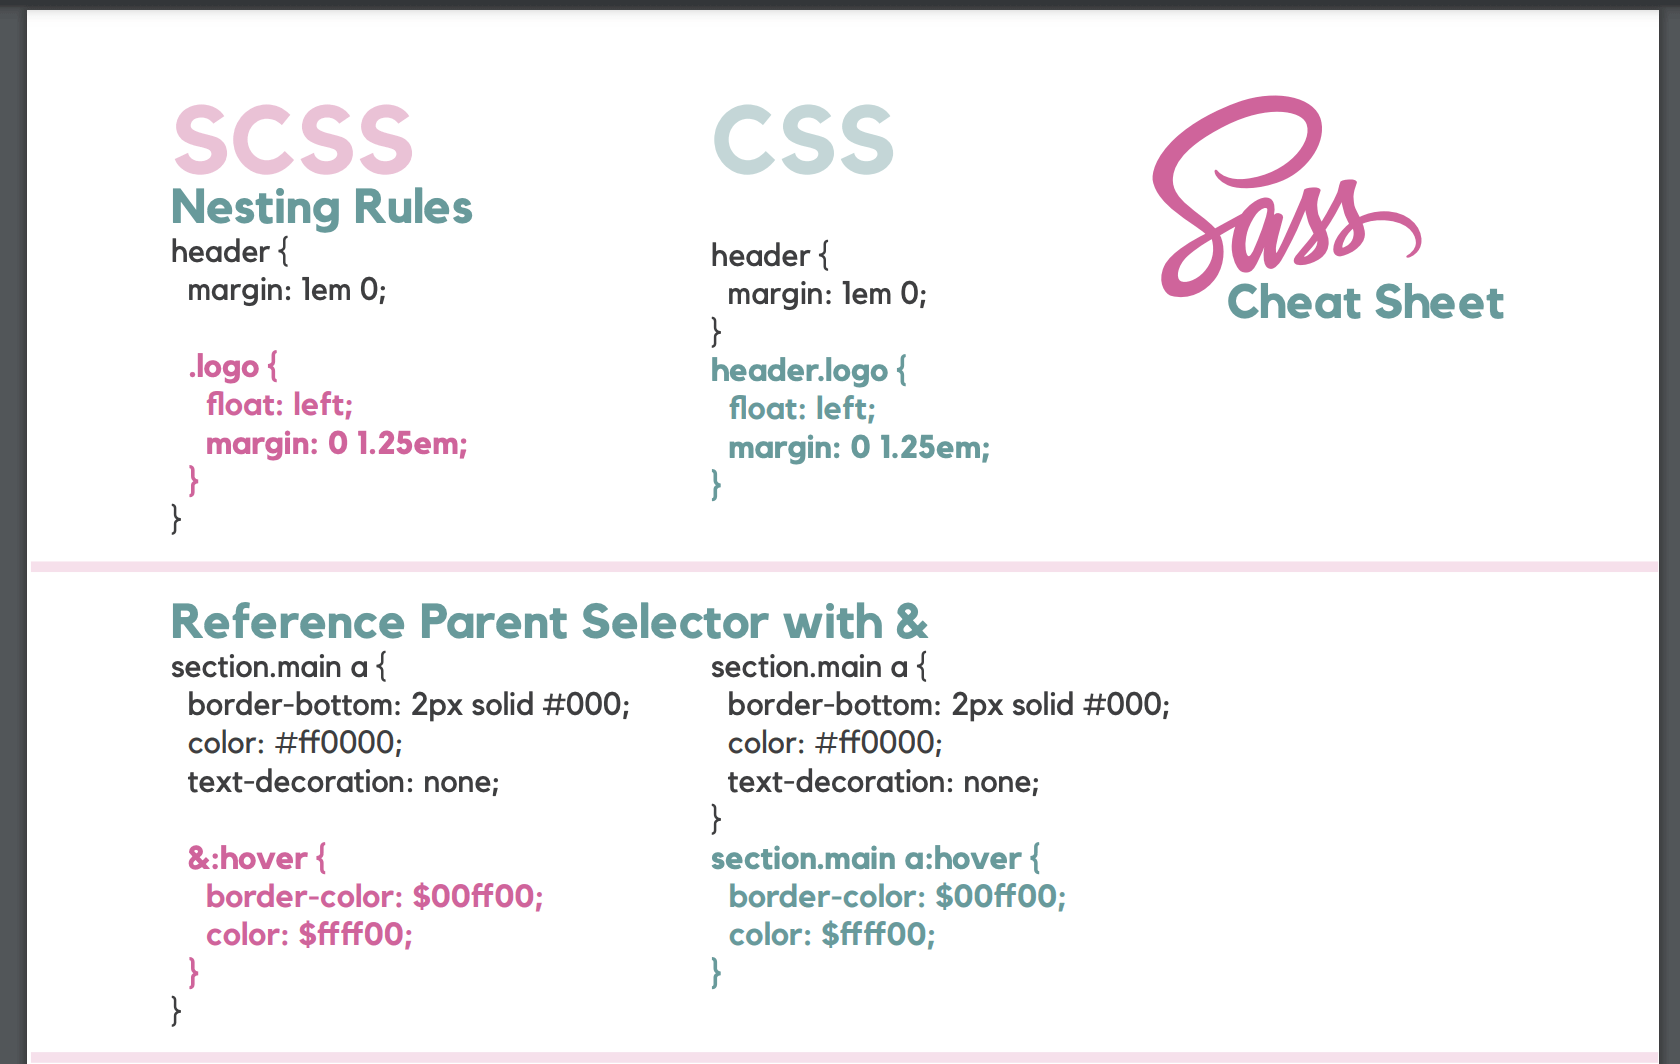 さっと使えるSCSS(SASS)のチートシート集